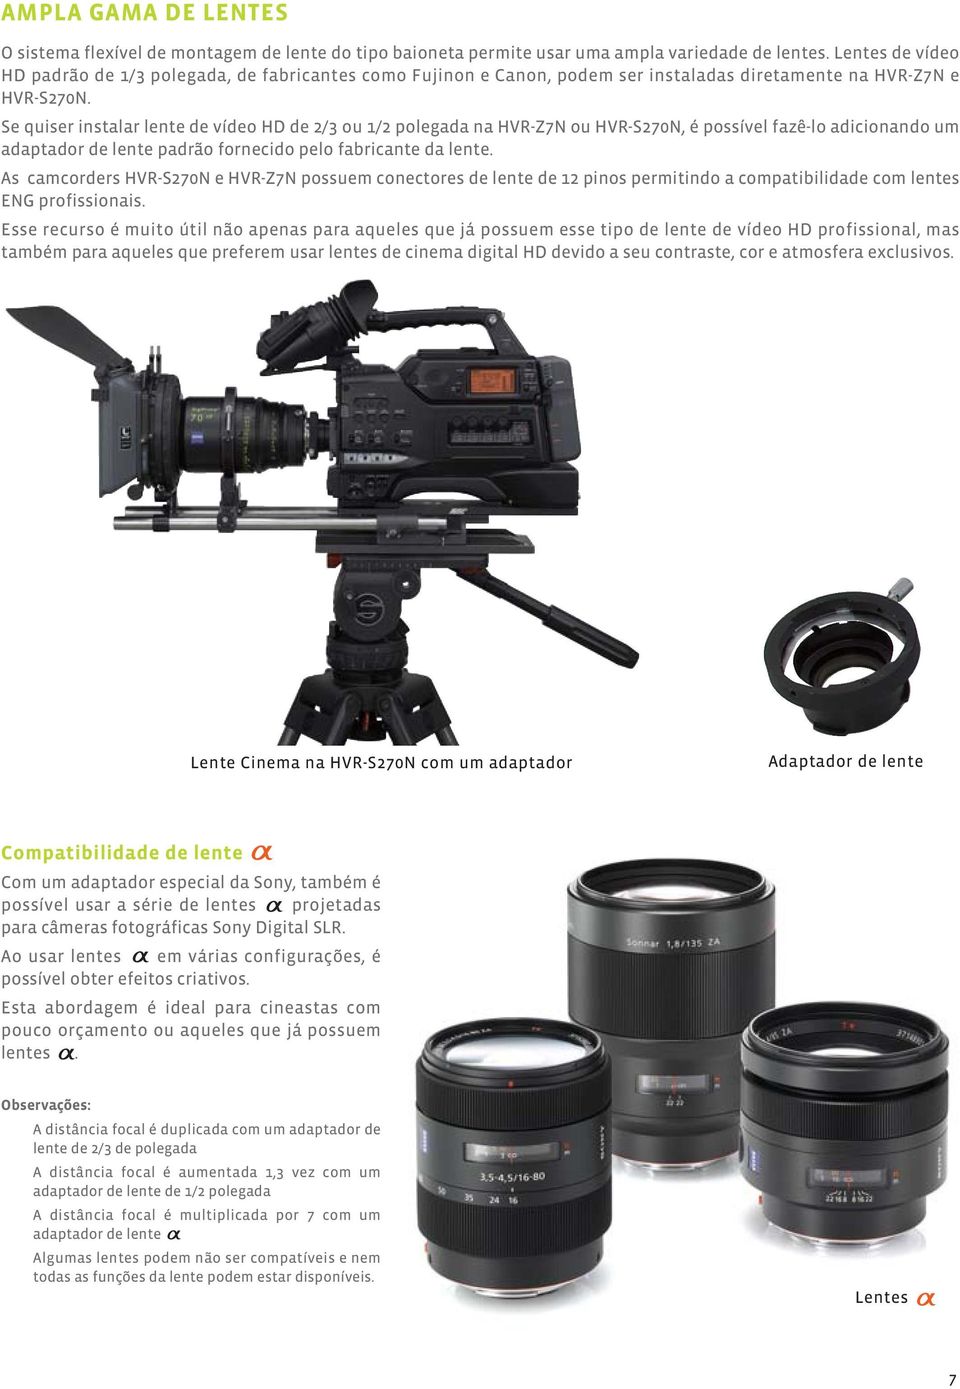 Se quiser instalar lente de vídeo HD de 2/3 ou 1/2 polegada na HVR-Z7N ou HVR-S270N, é possível fazê-lo adicionando um adaptador de lente padrão fornecido pelo fabricante da lente.